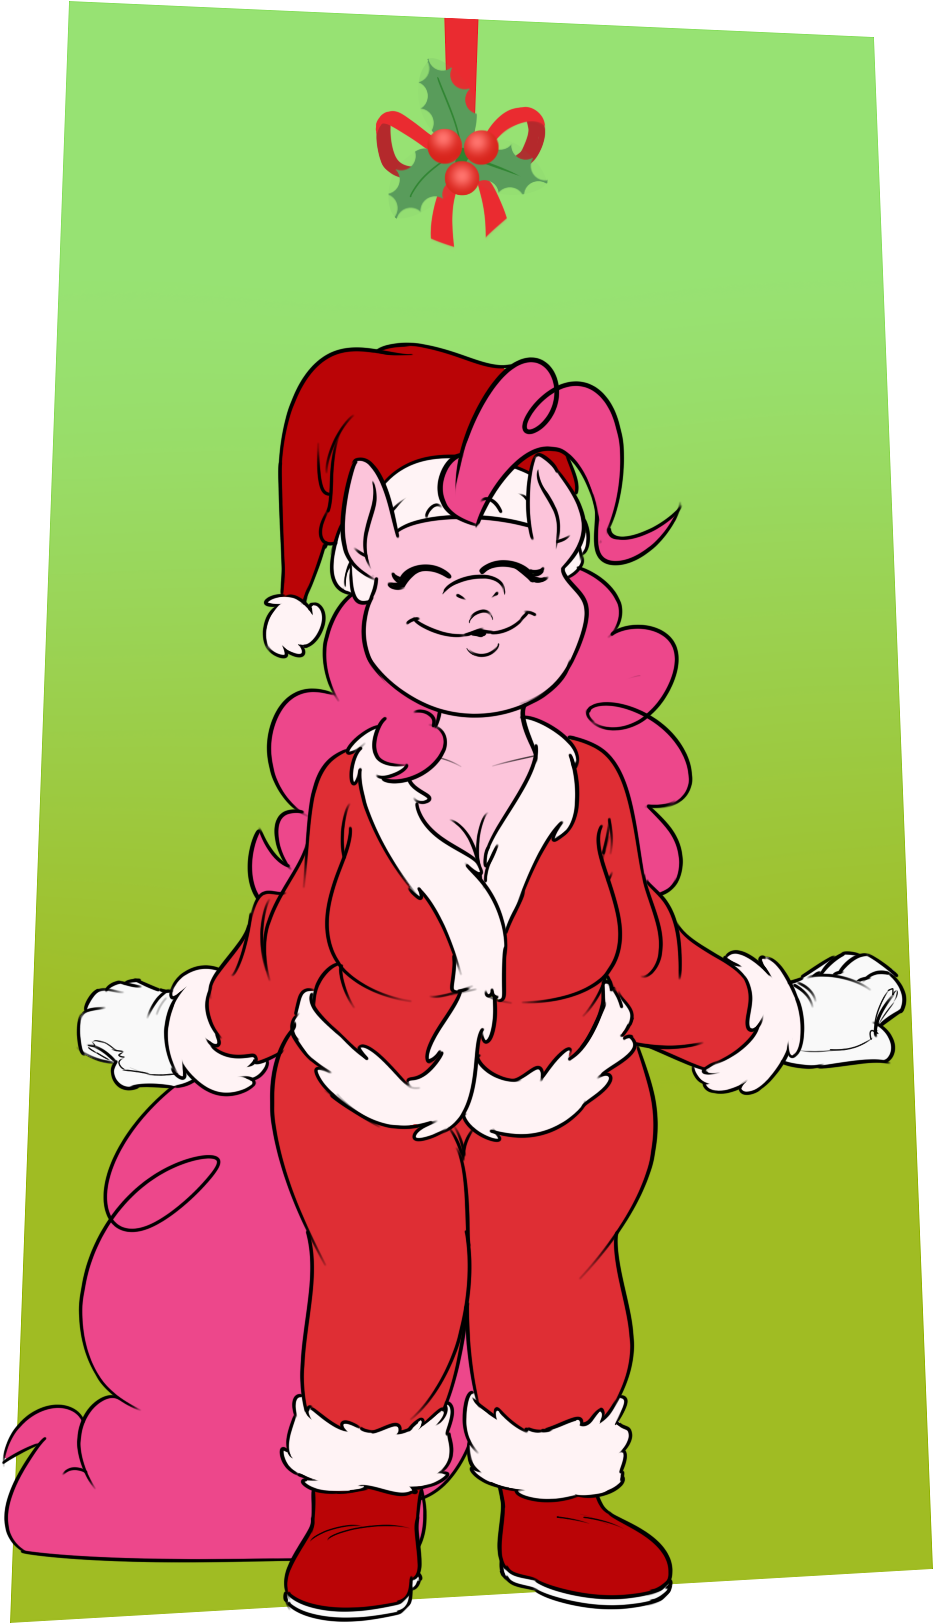 Cartoon A Cartoon Of A Woman In A Santa Outfit